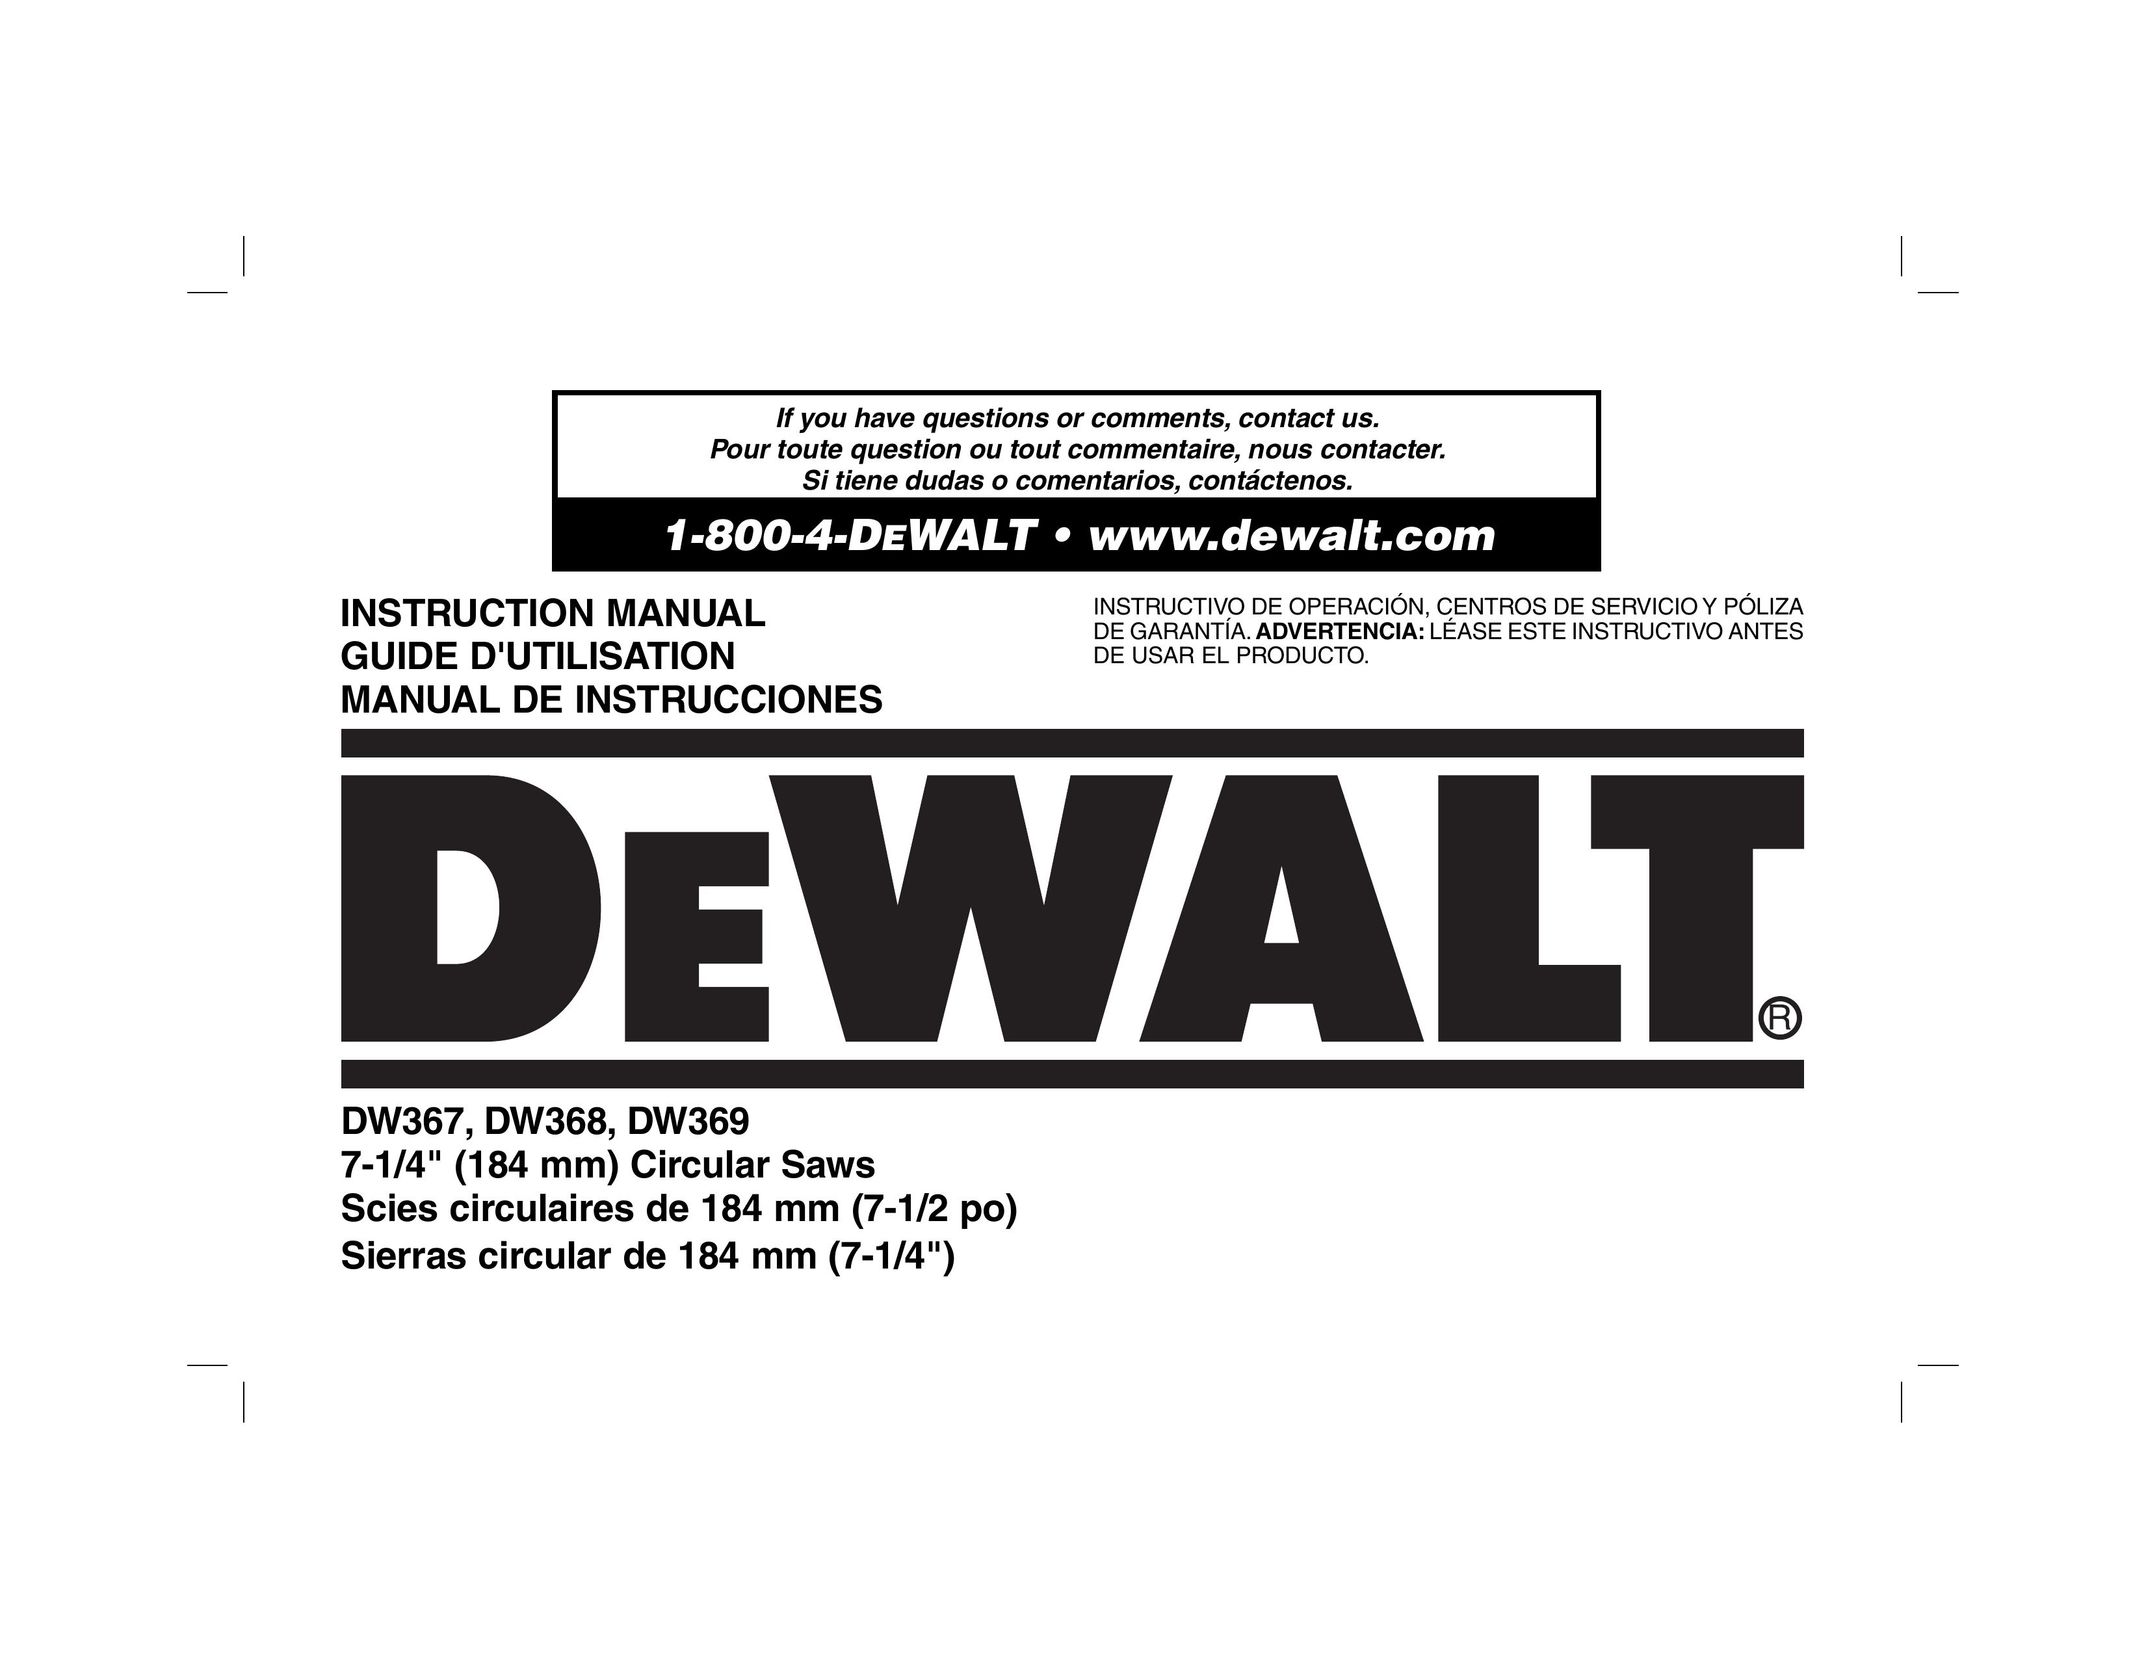 DeWalt DW369 Saw User Manual